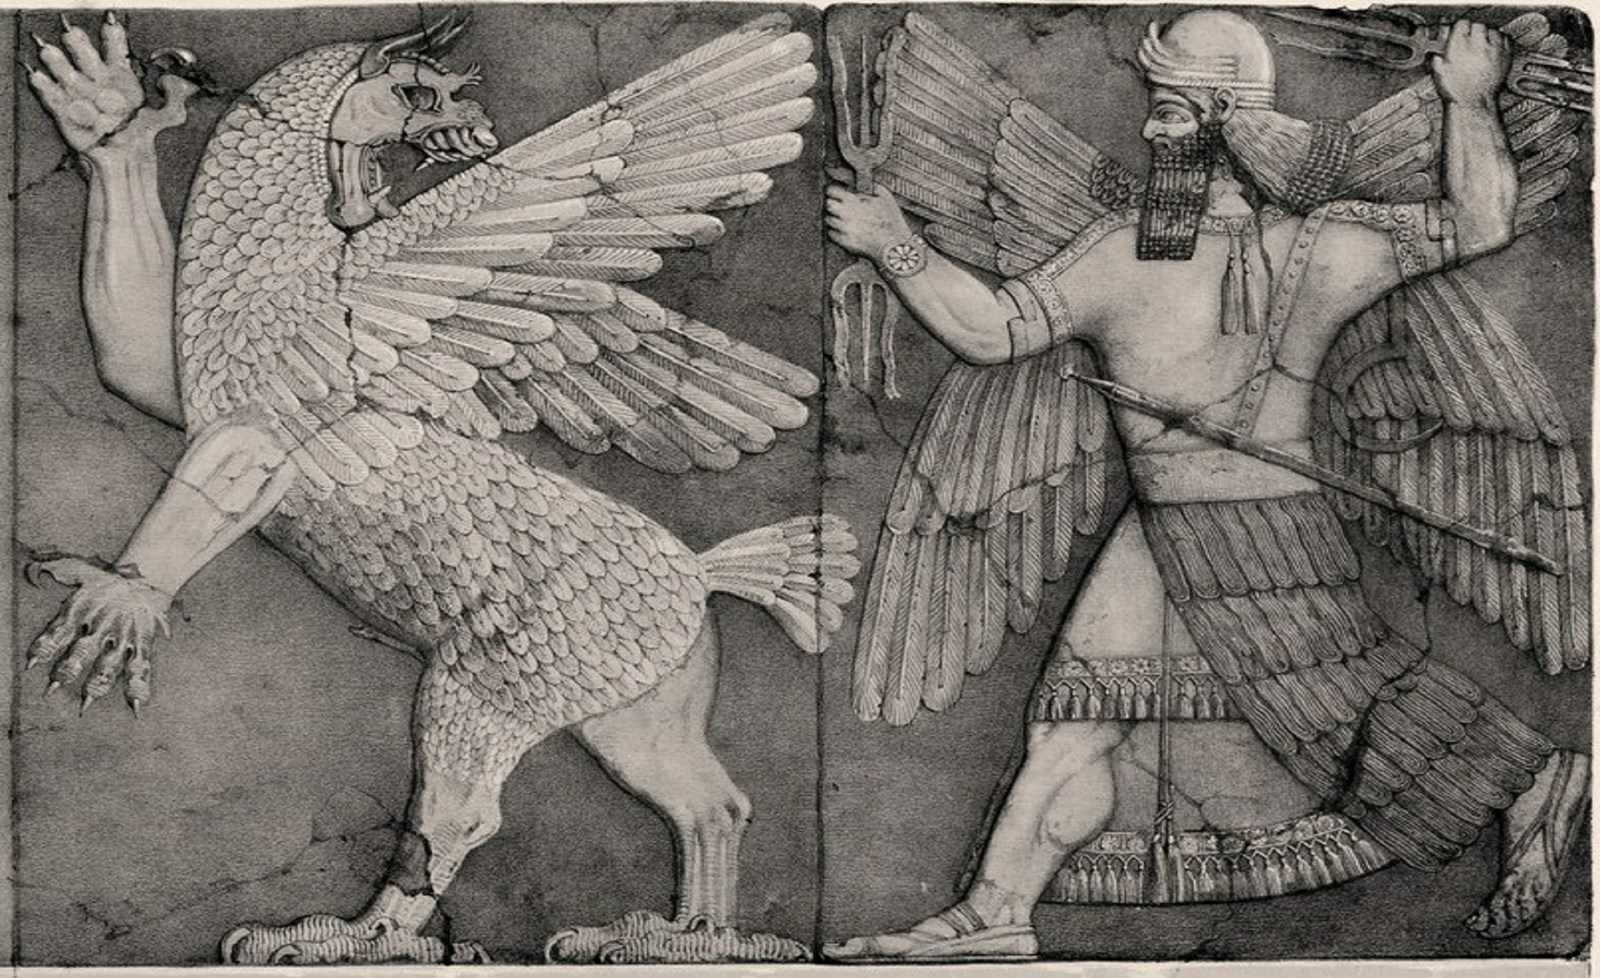 Marduk–the patron god of Babylon